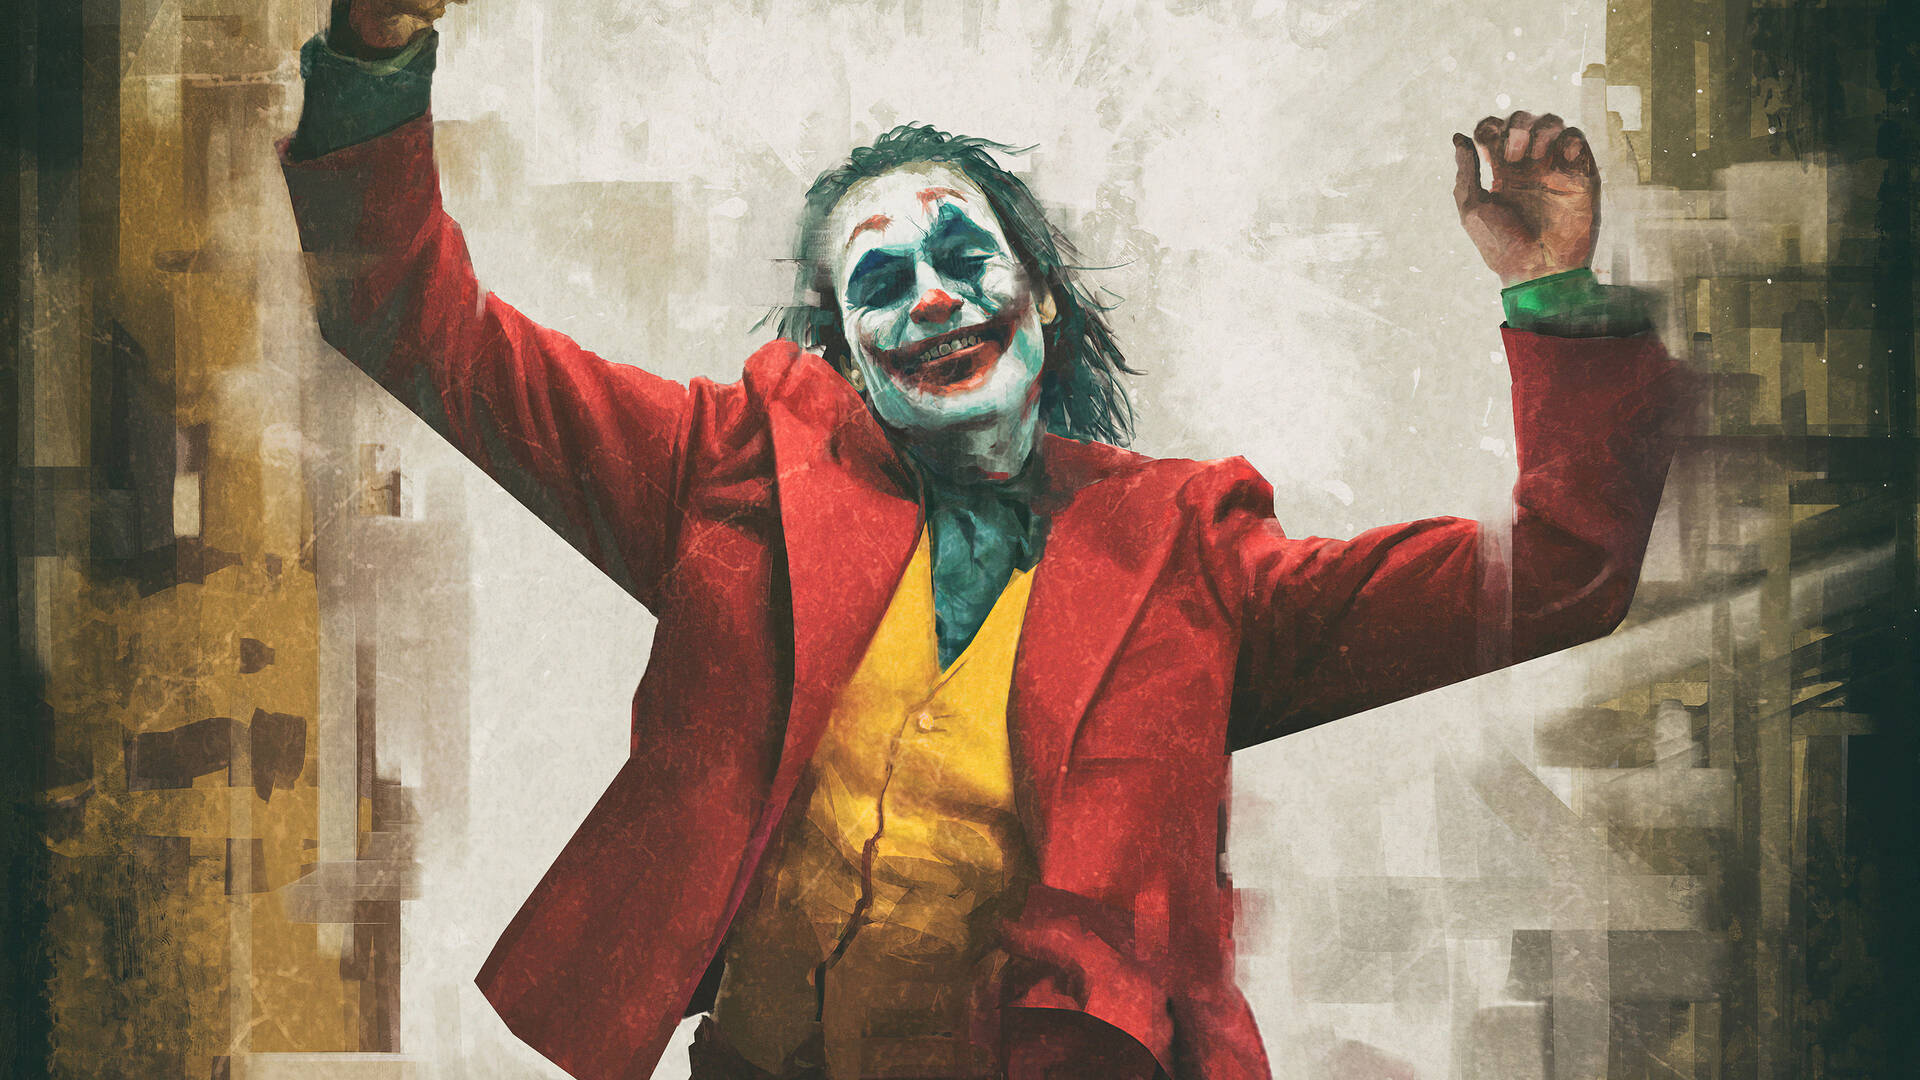 Dancing Joker 2020 Artwork Wallpaper